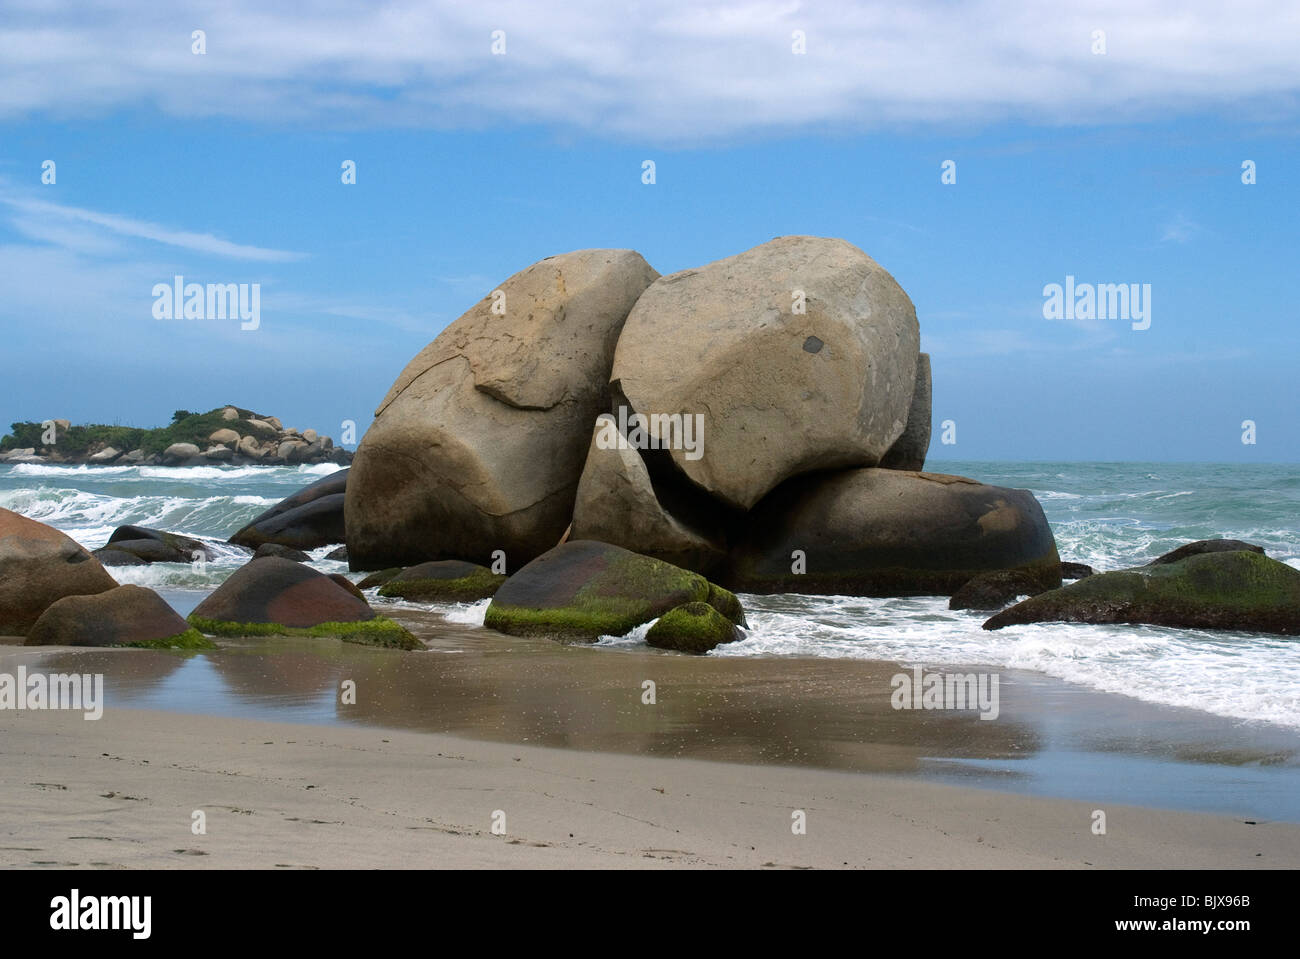 Arenilla Beach, Tayrona National Park, near Santa Marta, Colombia. Stock Photo